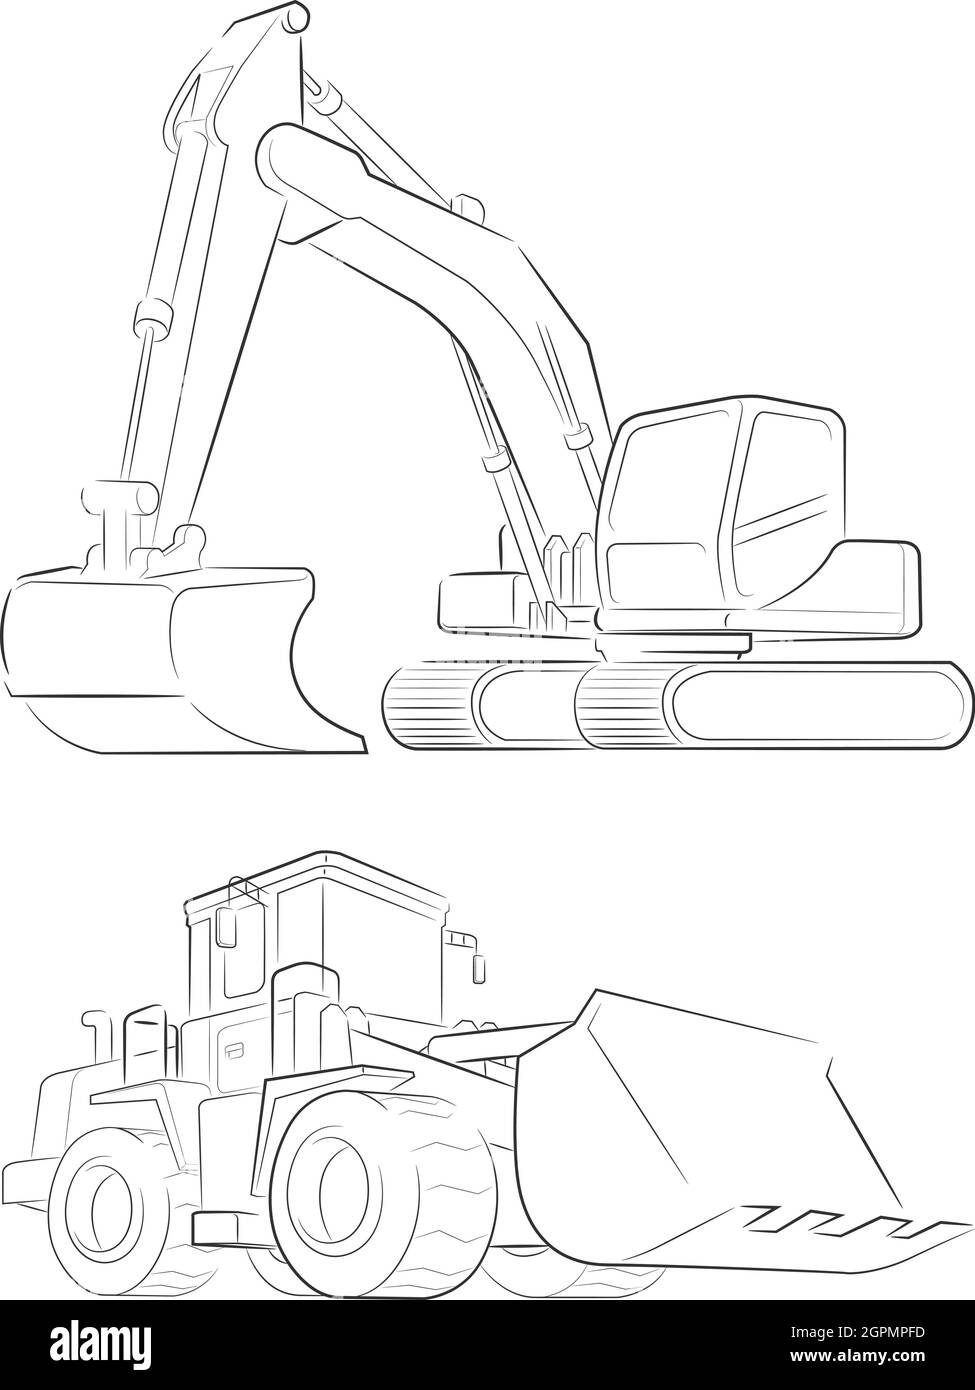 Sketch escavatore Bulldozer Construction Machine Doodle disegno a mano Illustrazione Vettoriale